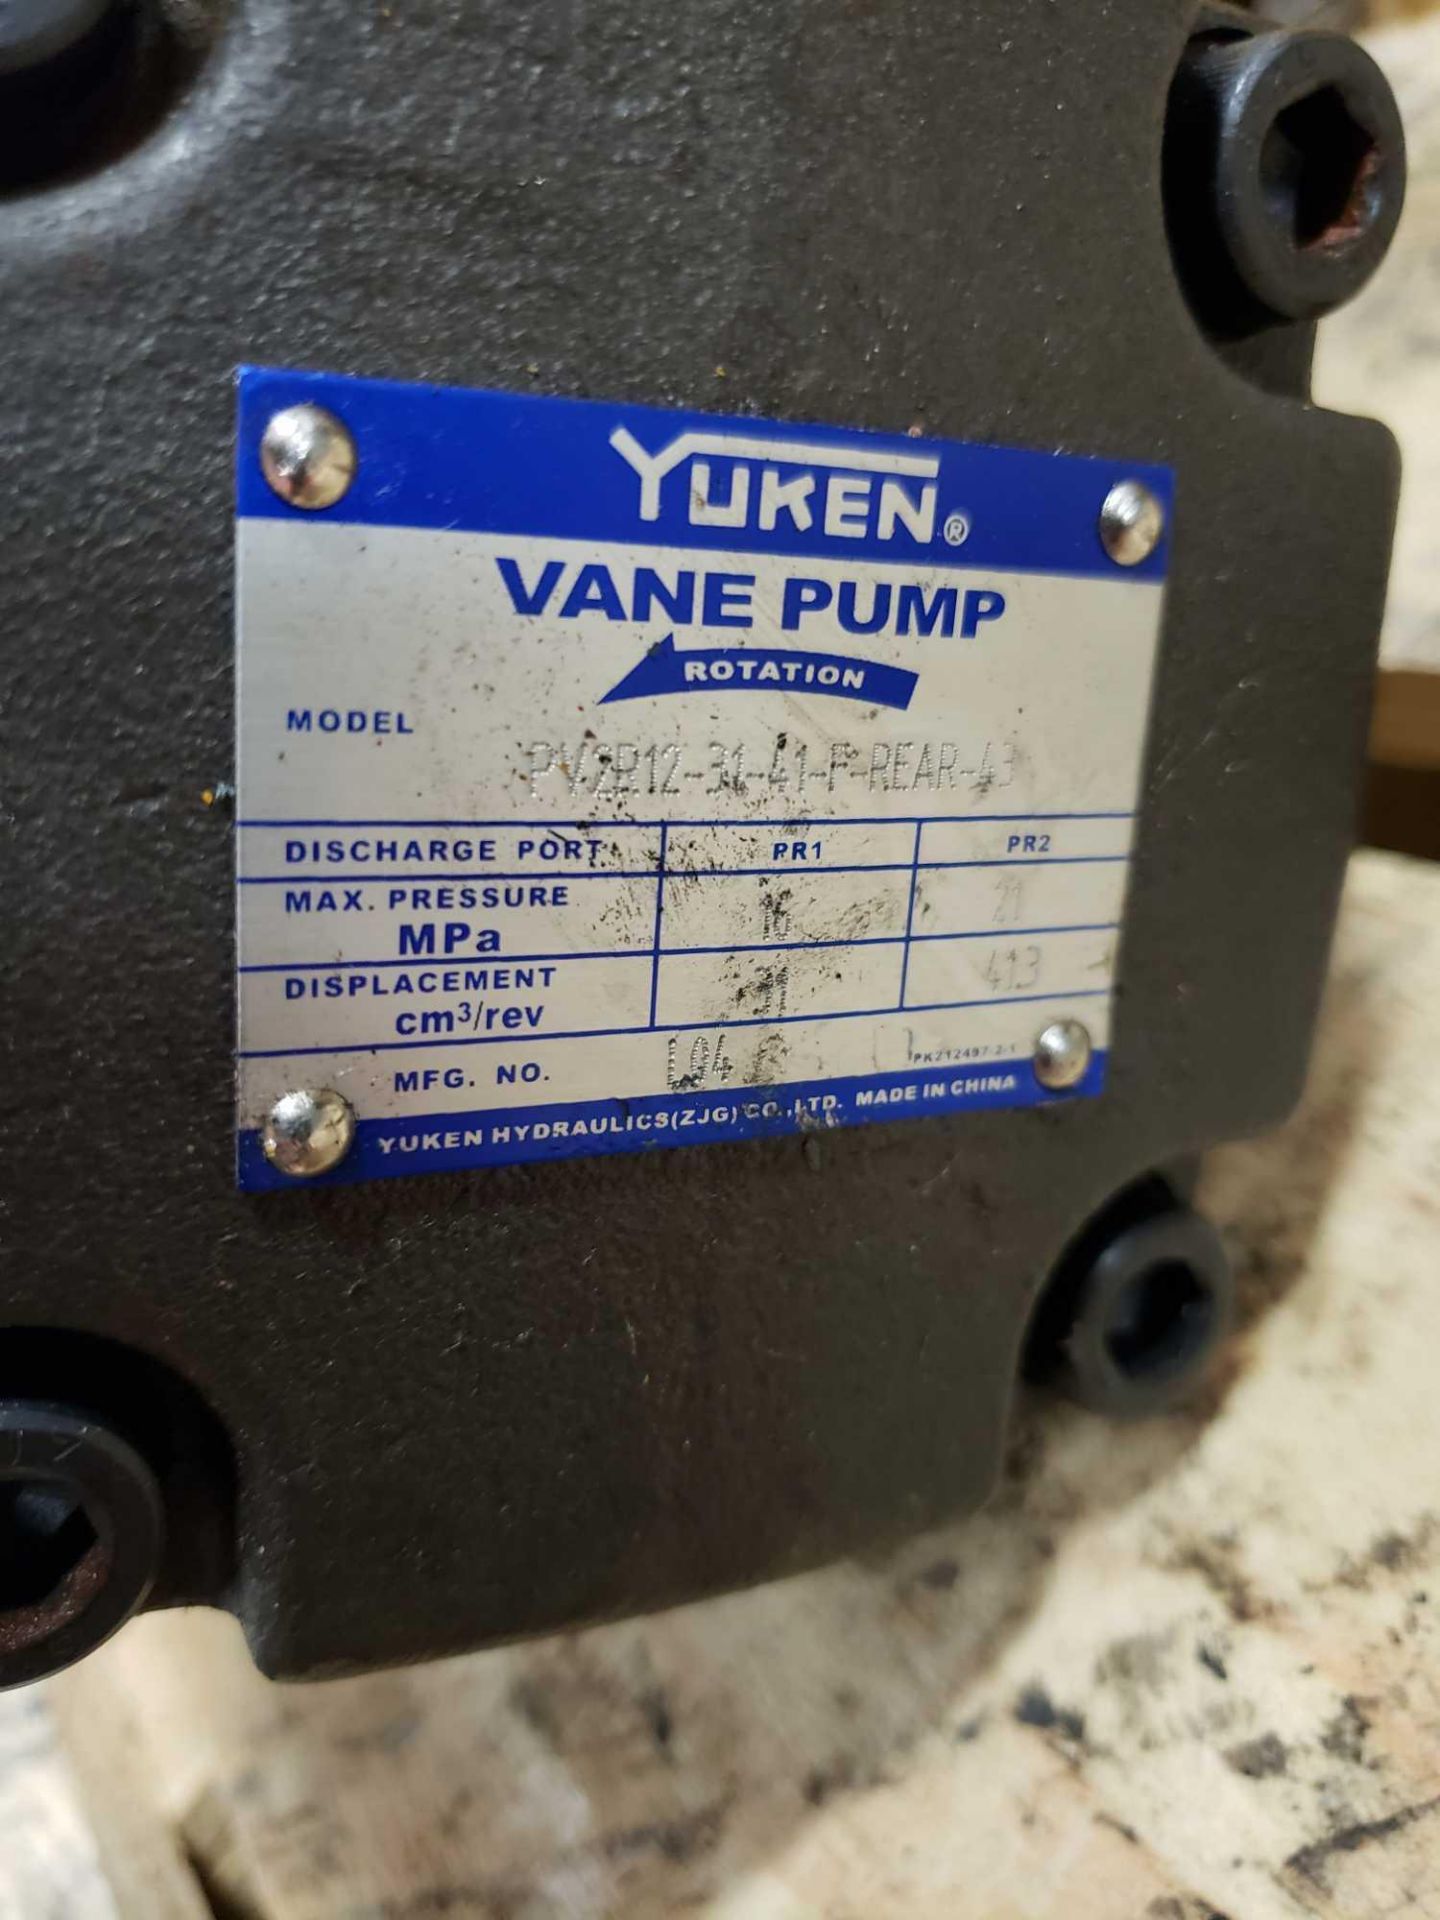 Yuken Vane Pump model PV2R12-31-41-F-REAR-43 hydraulic pump. - Image 2 of 2